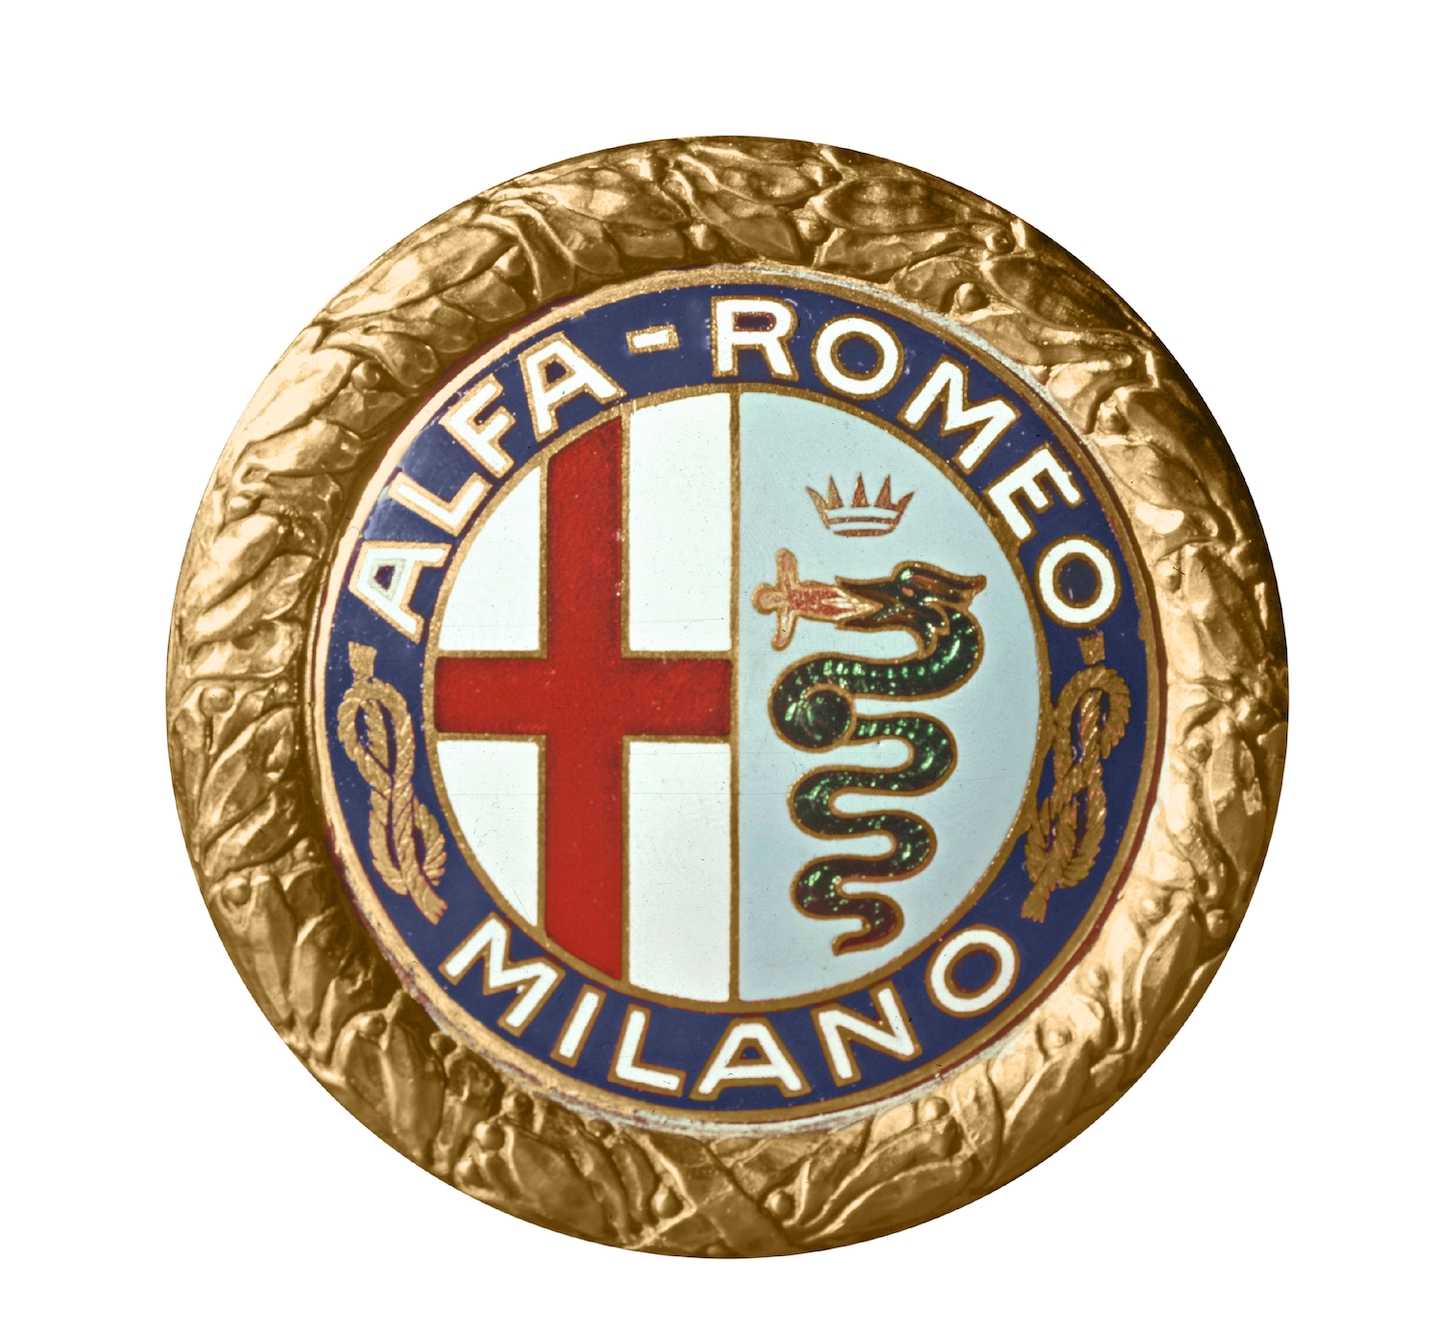 Страна-производитель Альфа Ромео, история компании, что означает логотип Alfa Romeo, как менялись значки бренда, значение эмблемы